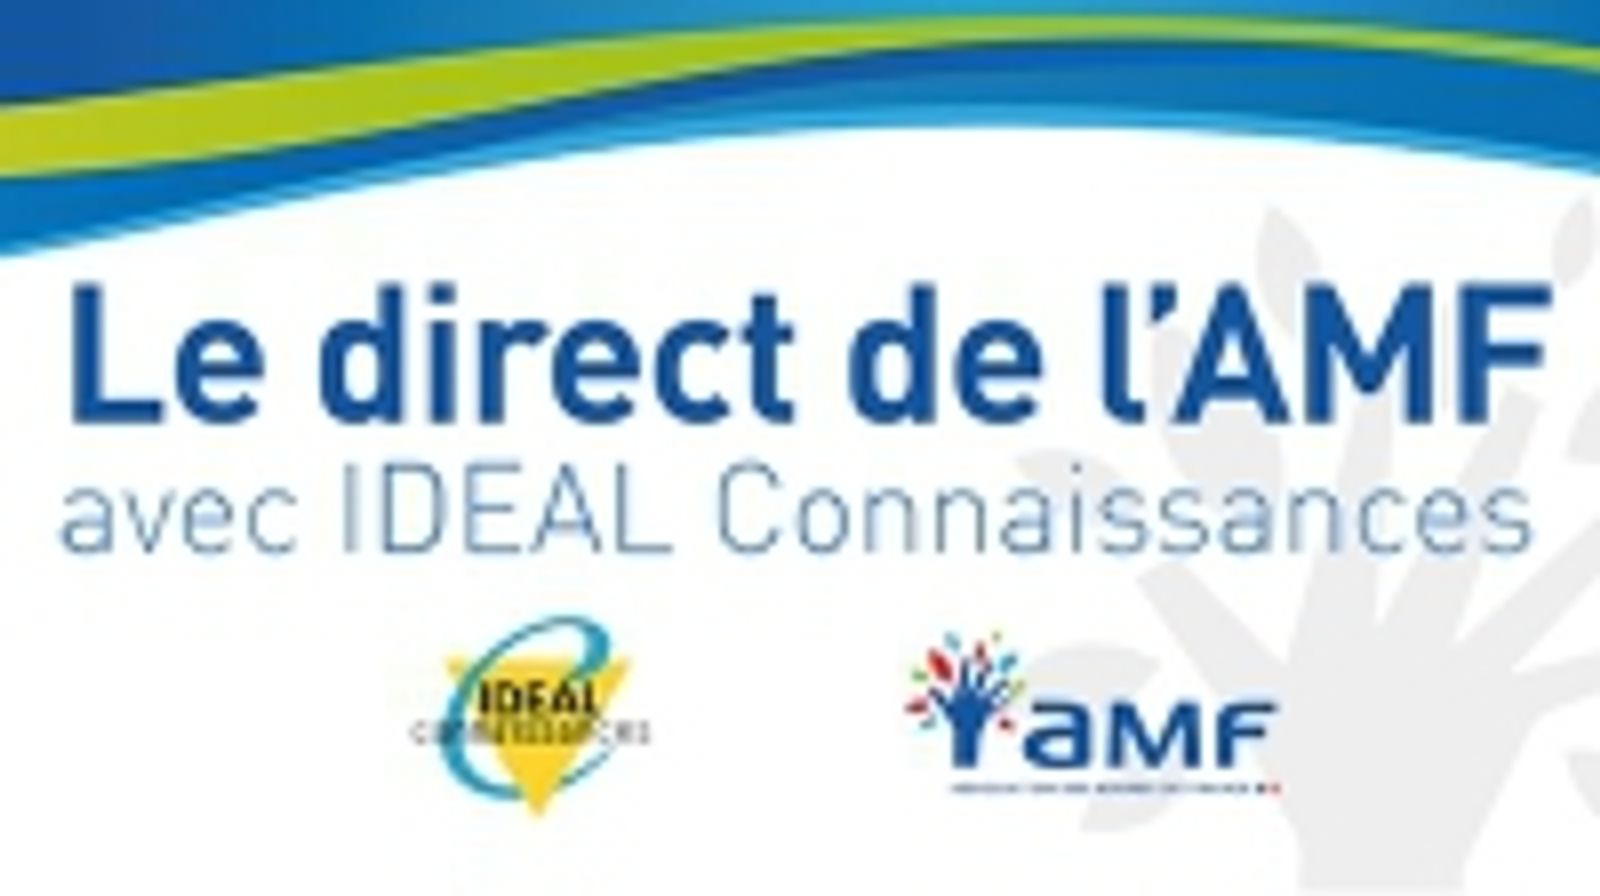 Le direct de l'AMF avec IDEAL Connaissances : Agendas d’accessibilité : quelle élaboration par les communes et les intercommunalités ?